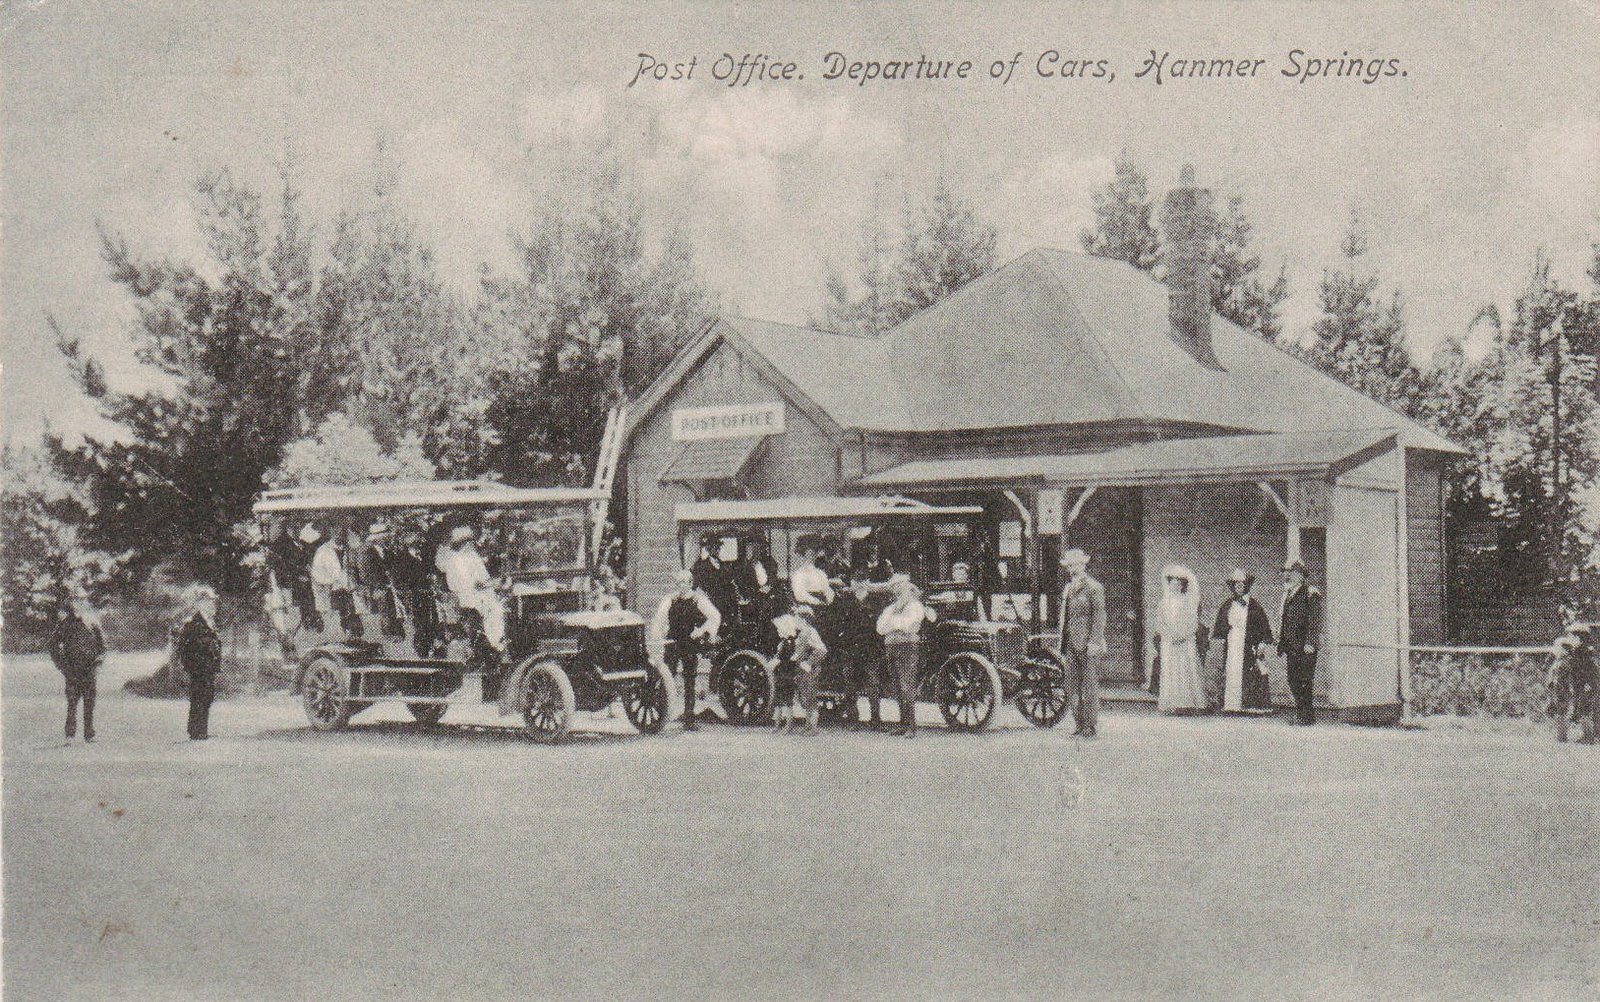 [Hanmer+Springs+Touring+Cars+Post+Office+1910s.jpg]